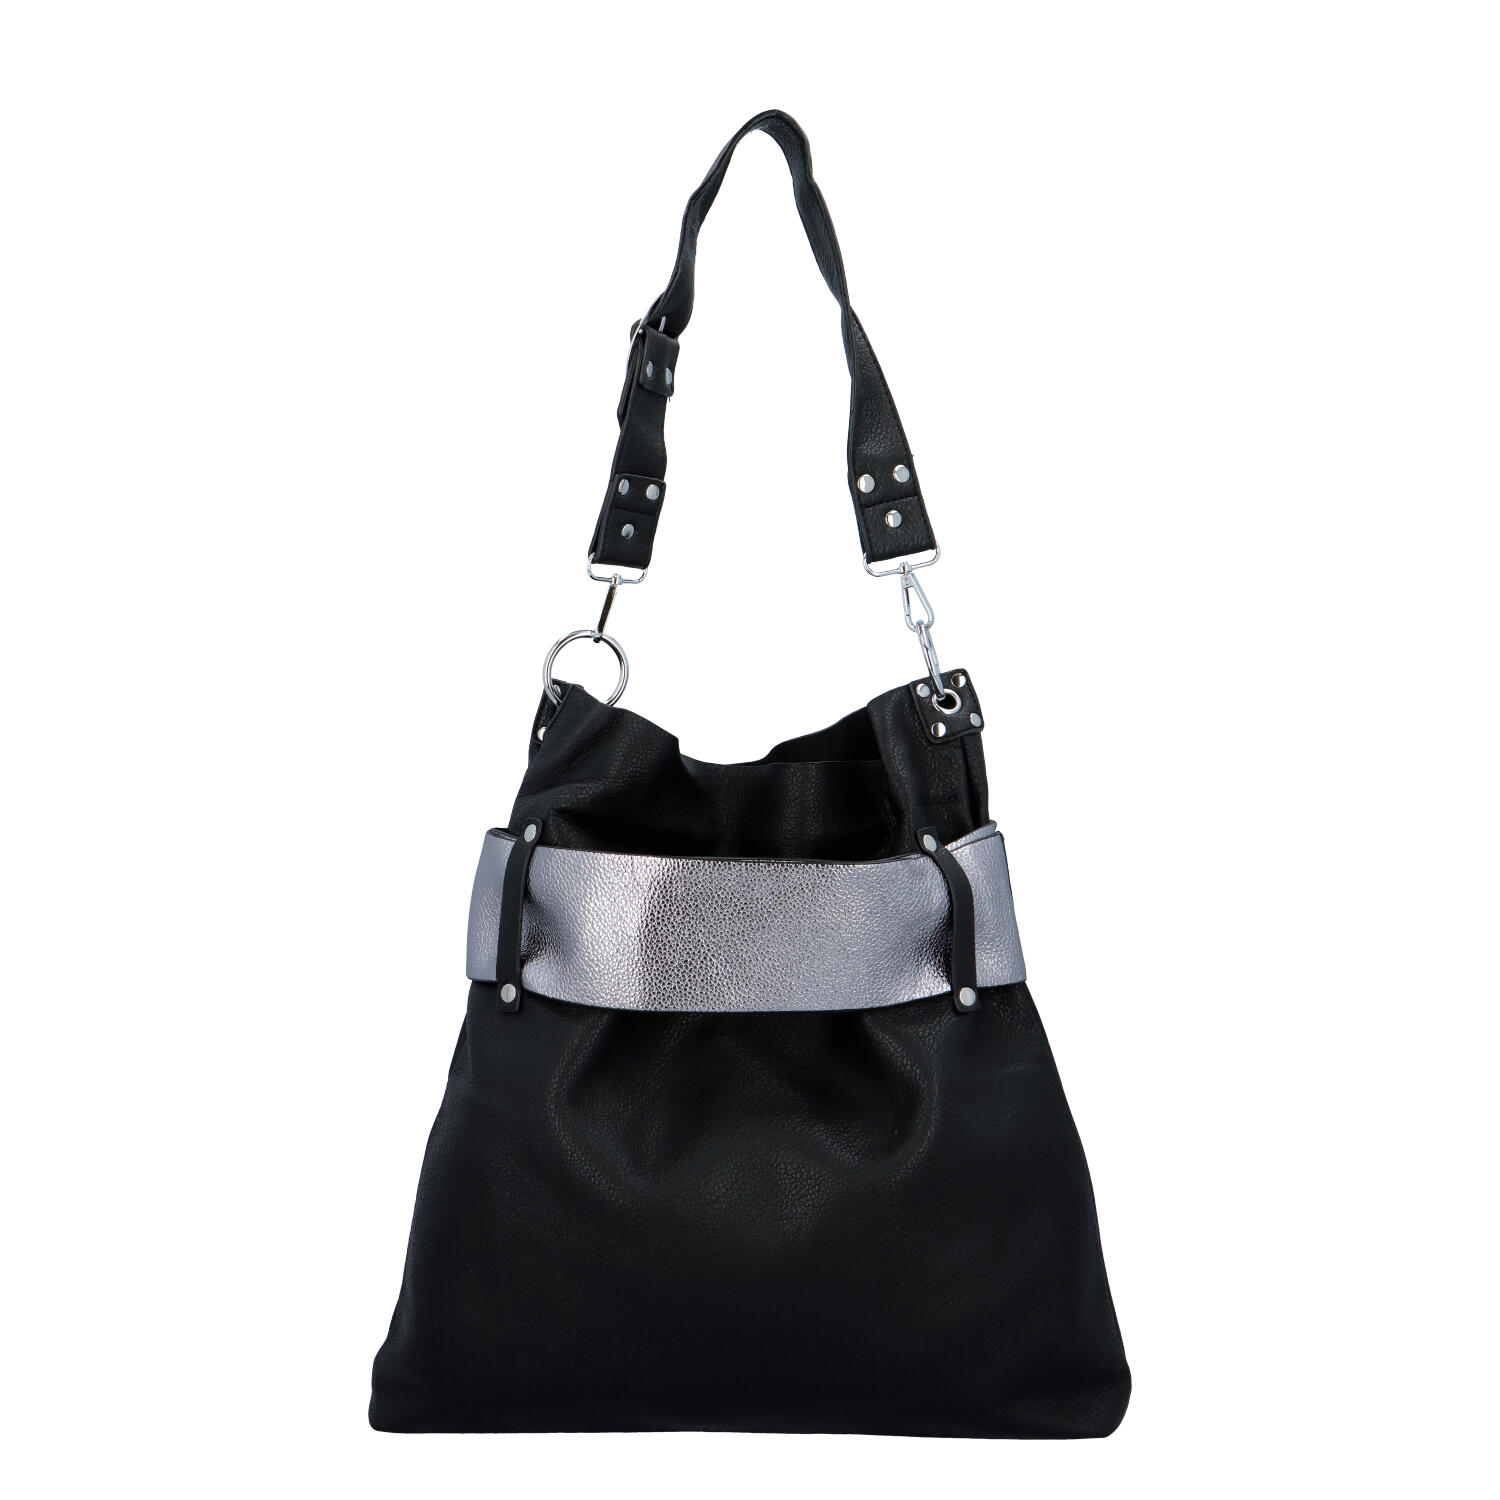 Luxusní dámská kabelka černo stříbrná - Paolo Bags Manue